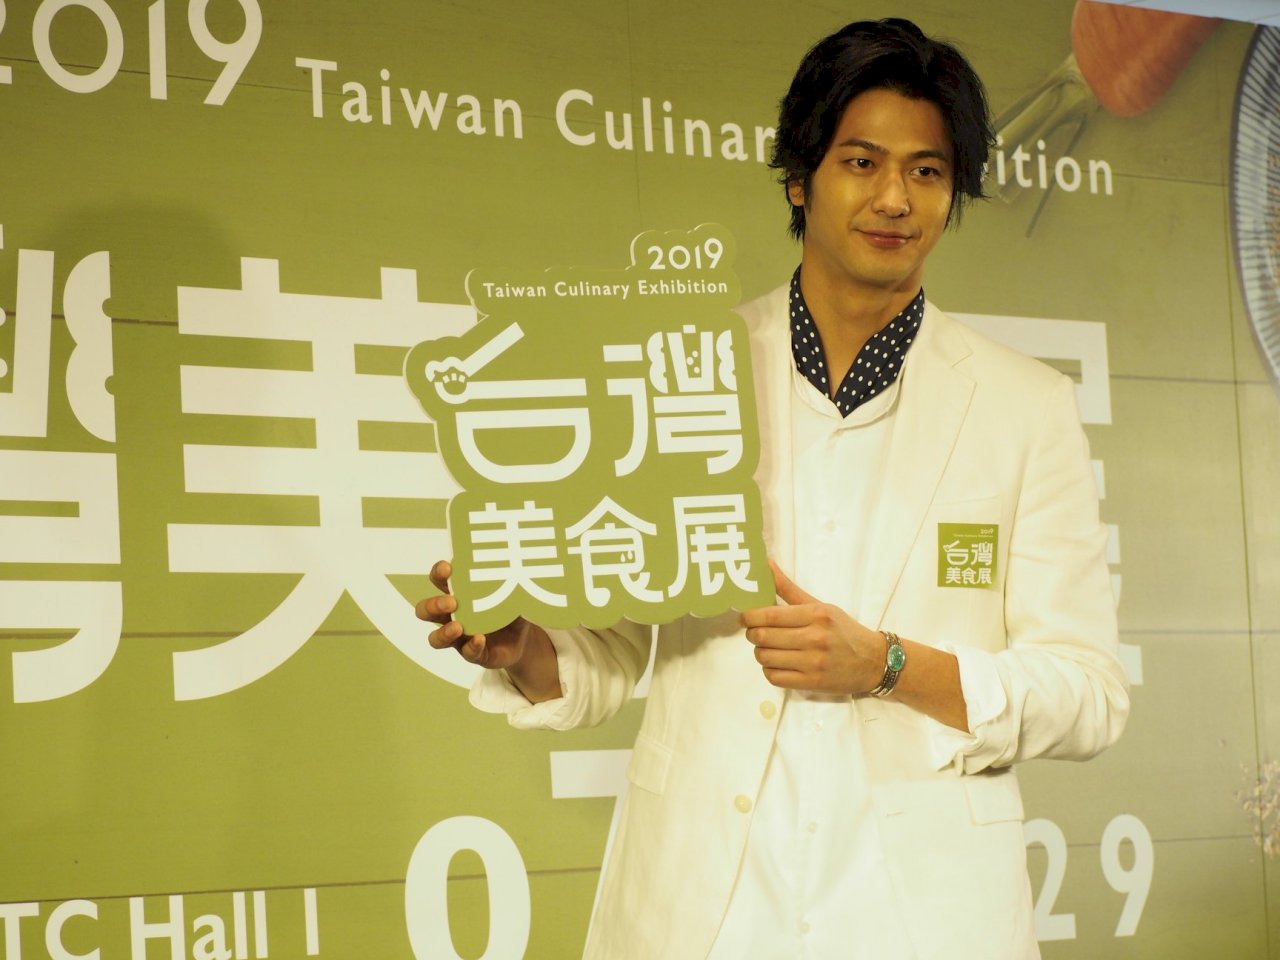 日本帥廚宣傳台灣美食展 對日傳達台灣美食文化